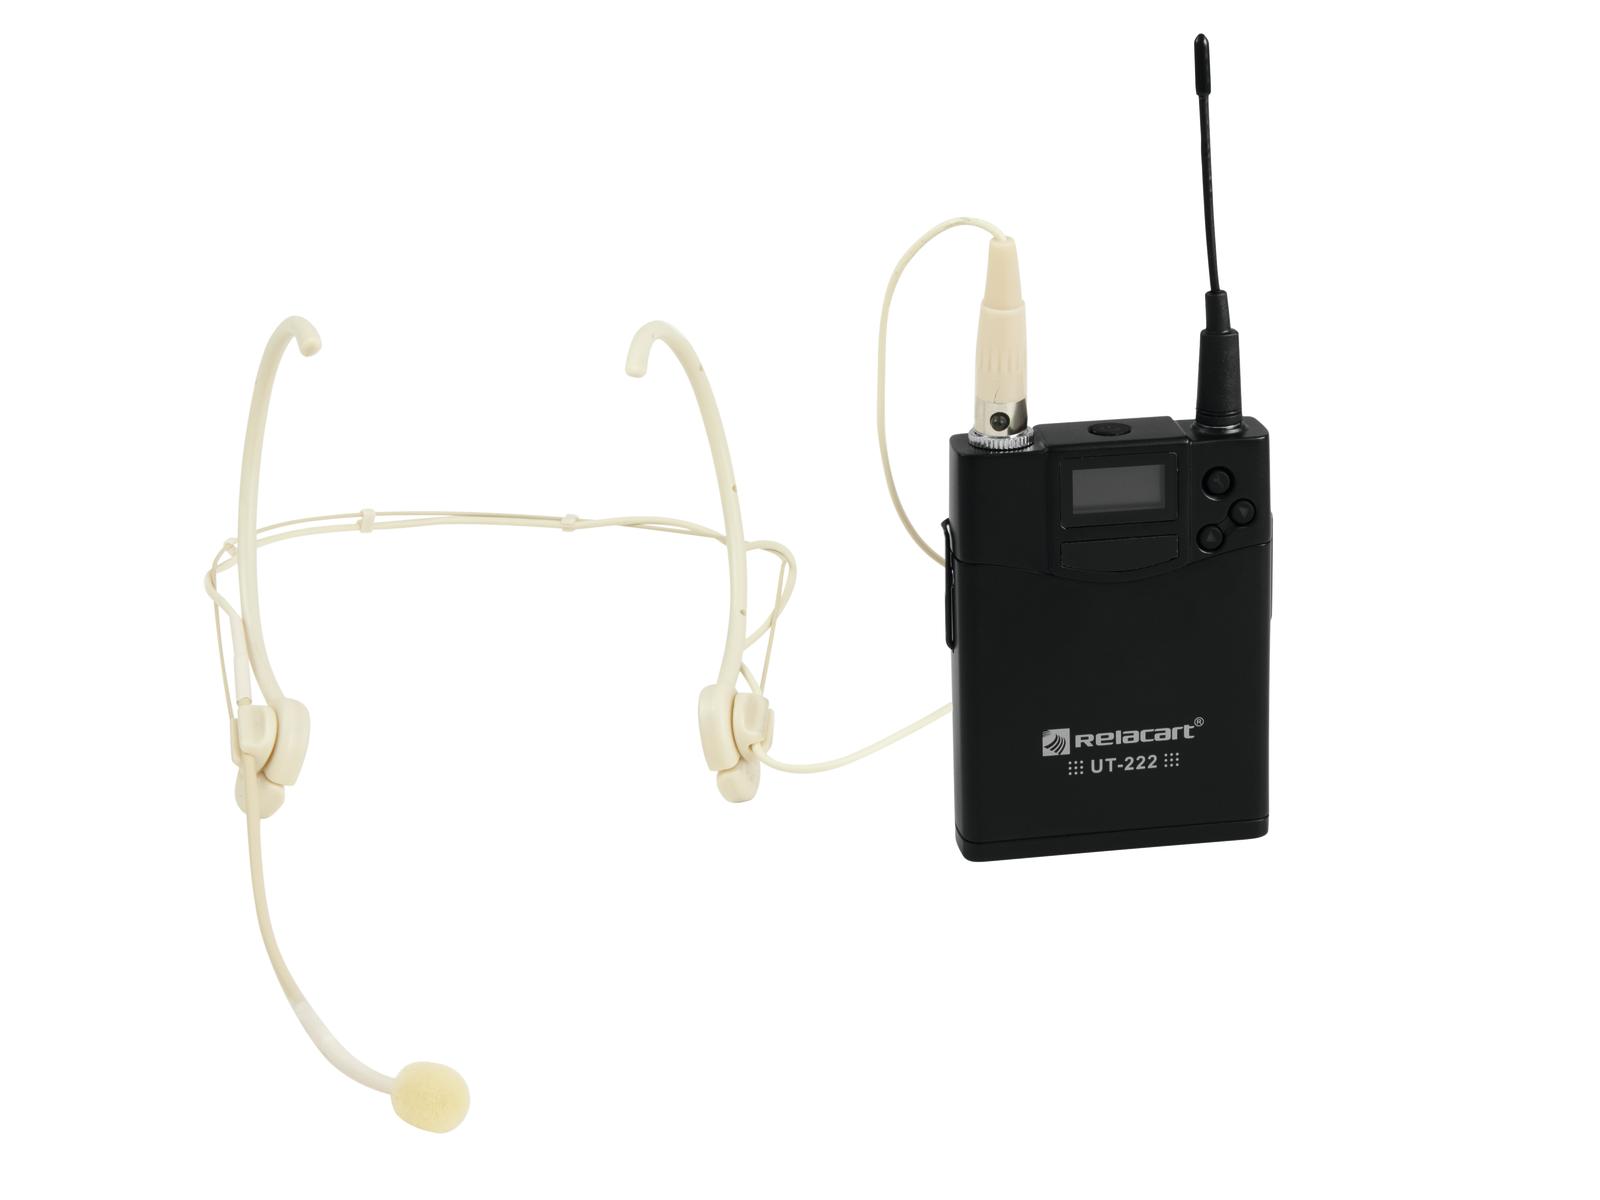 Relacart UT-222, vysielač a hlavový mikrofon HM-800S | Obrázok 1 | eplay.sk